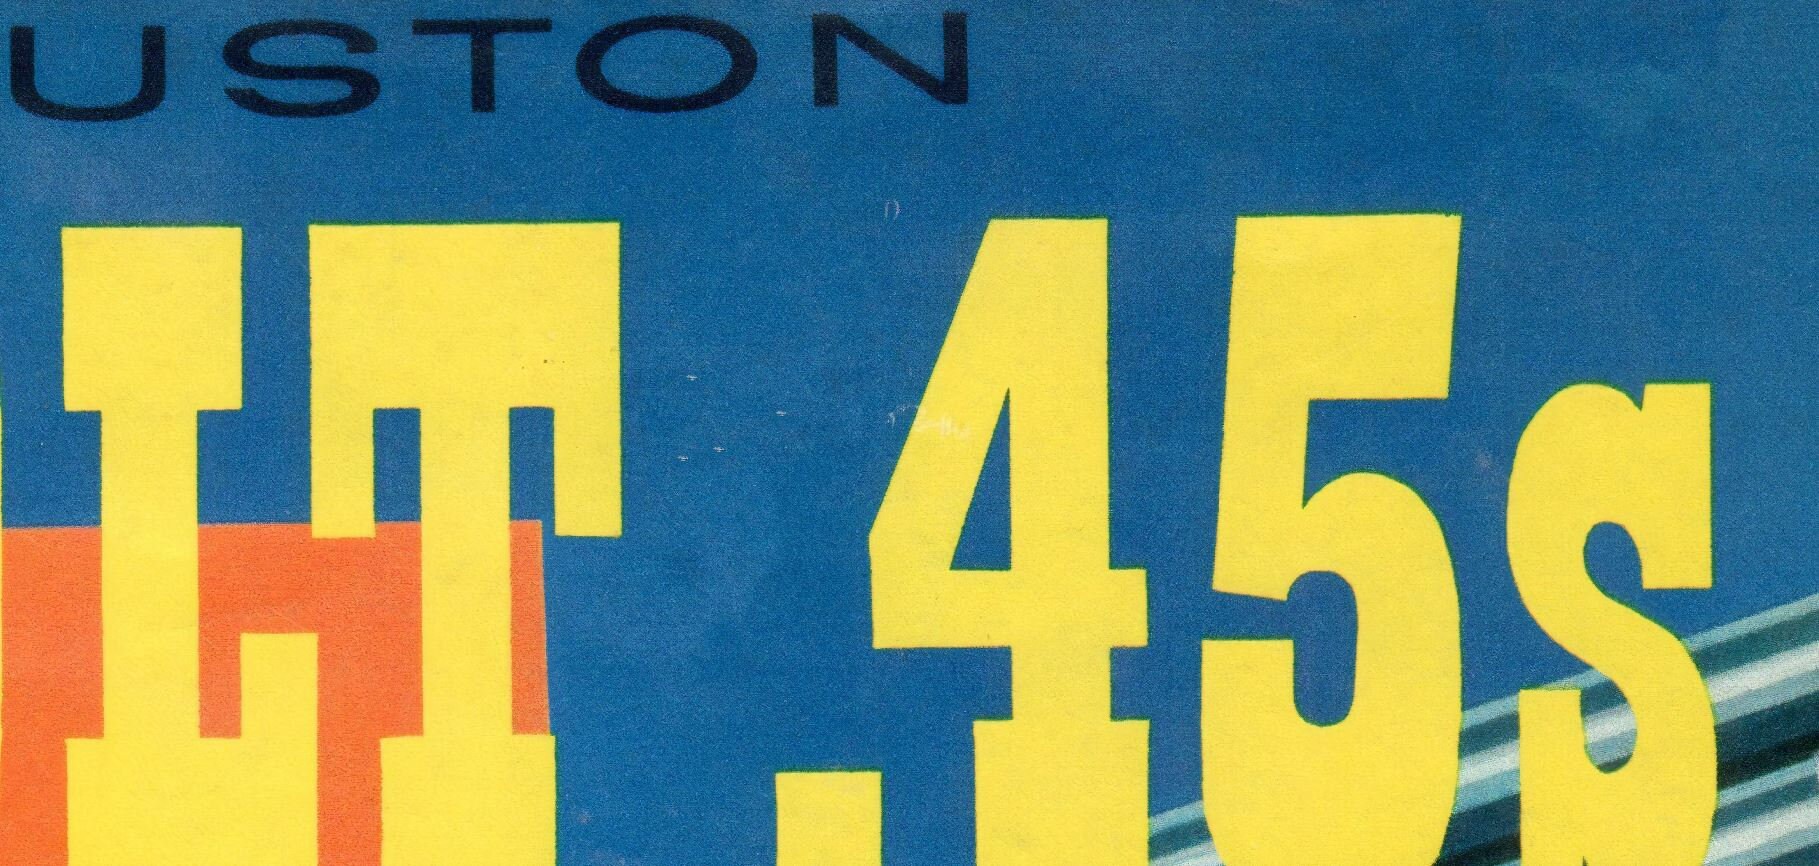 1962 HOUSTON COLT .45s Print Houston Astros Vintage 